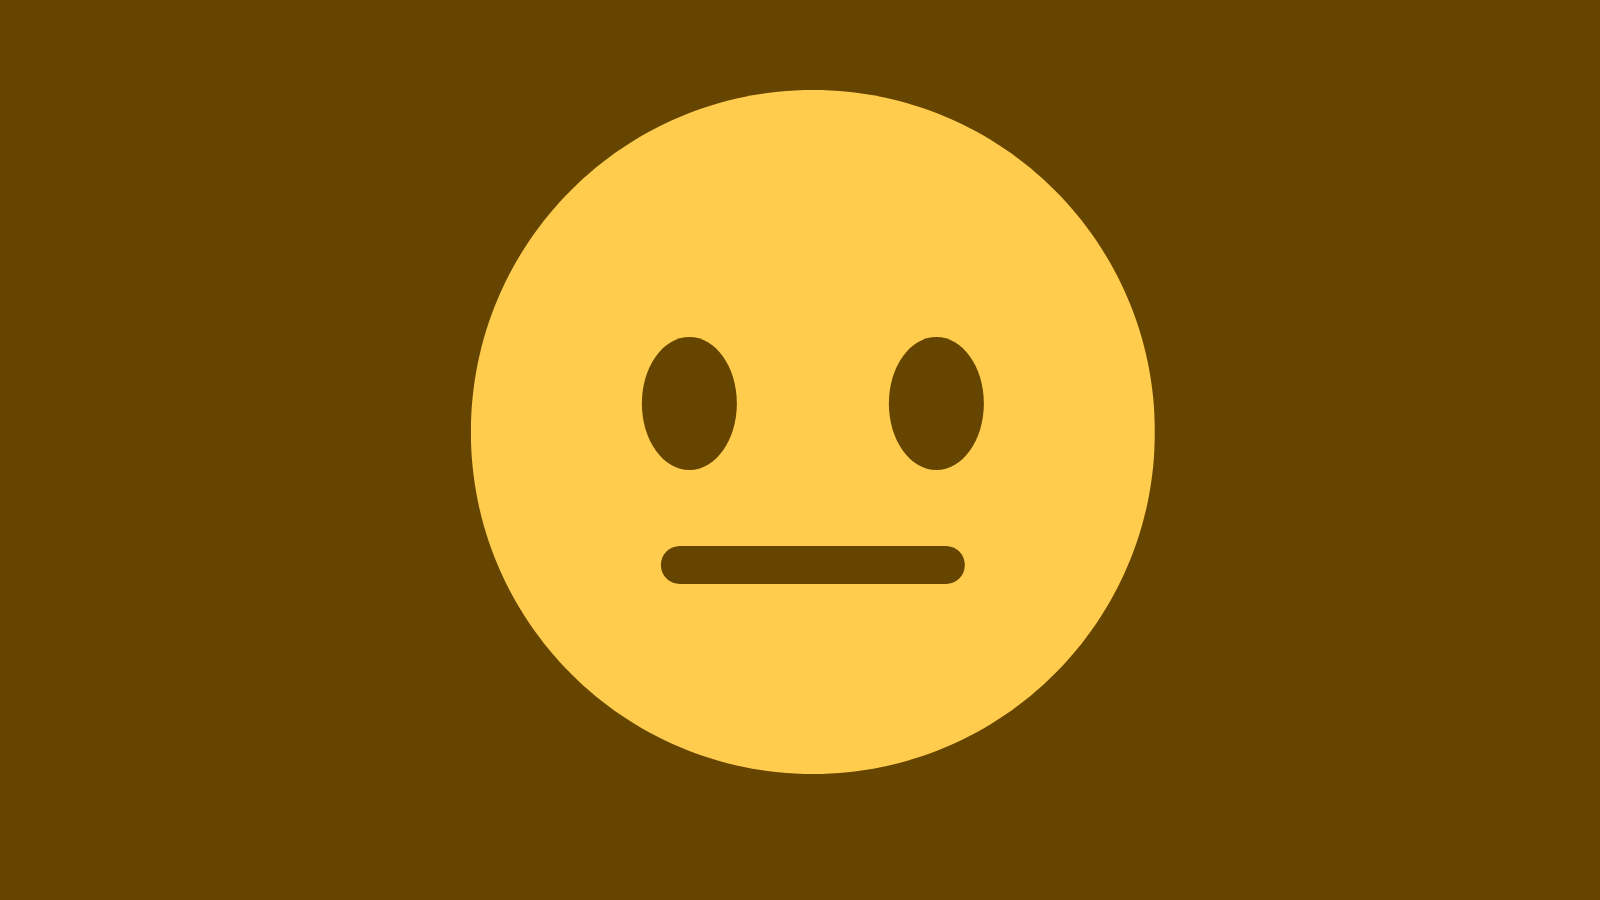 A neutral face emoji